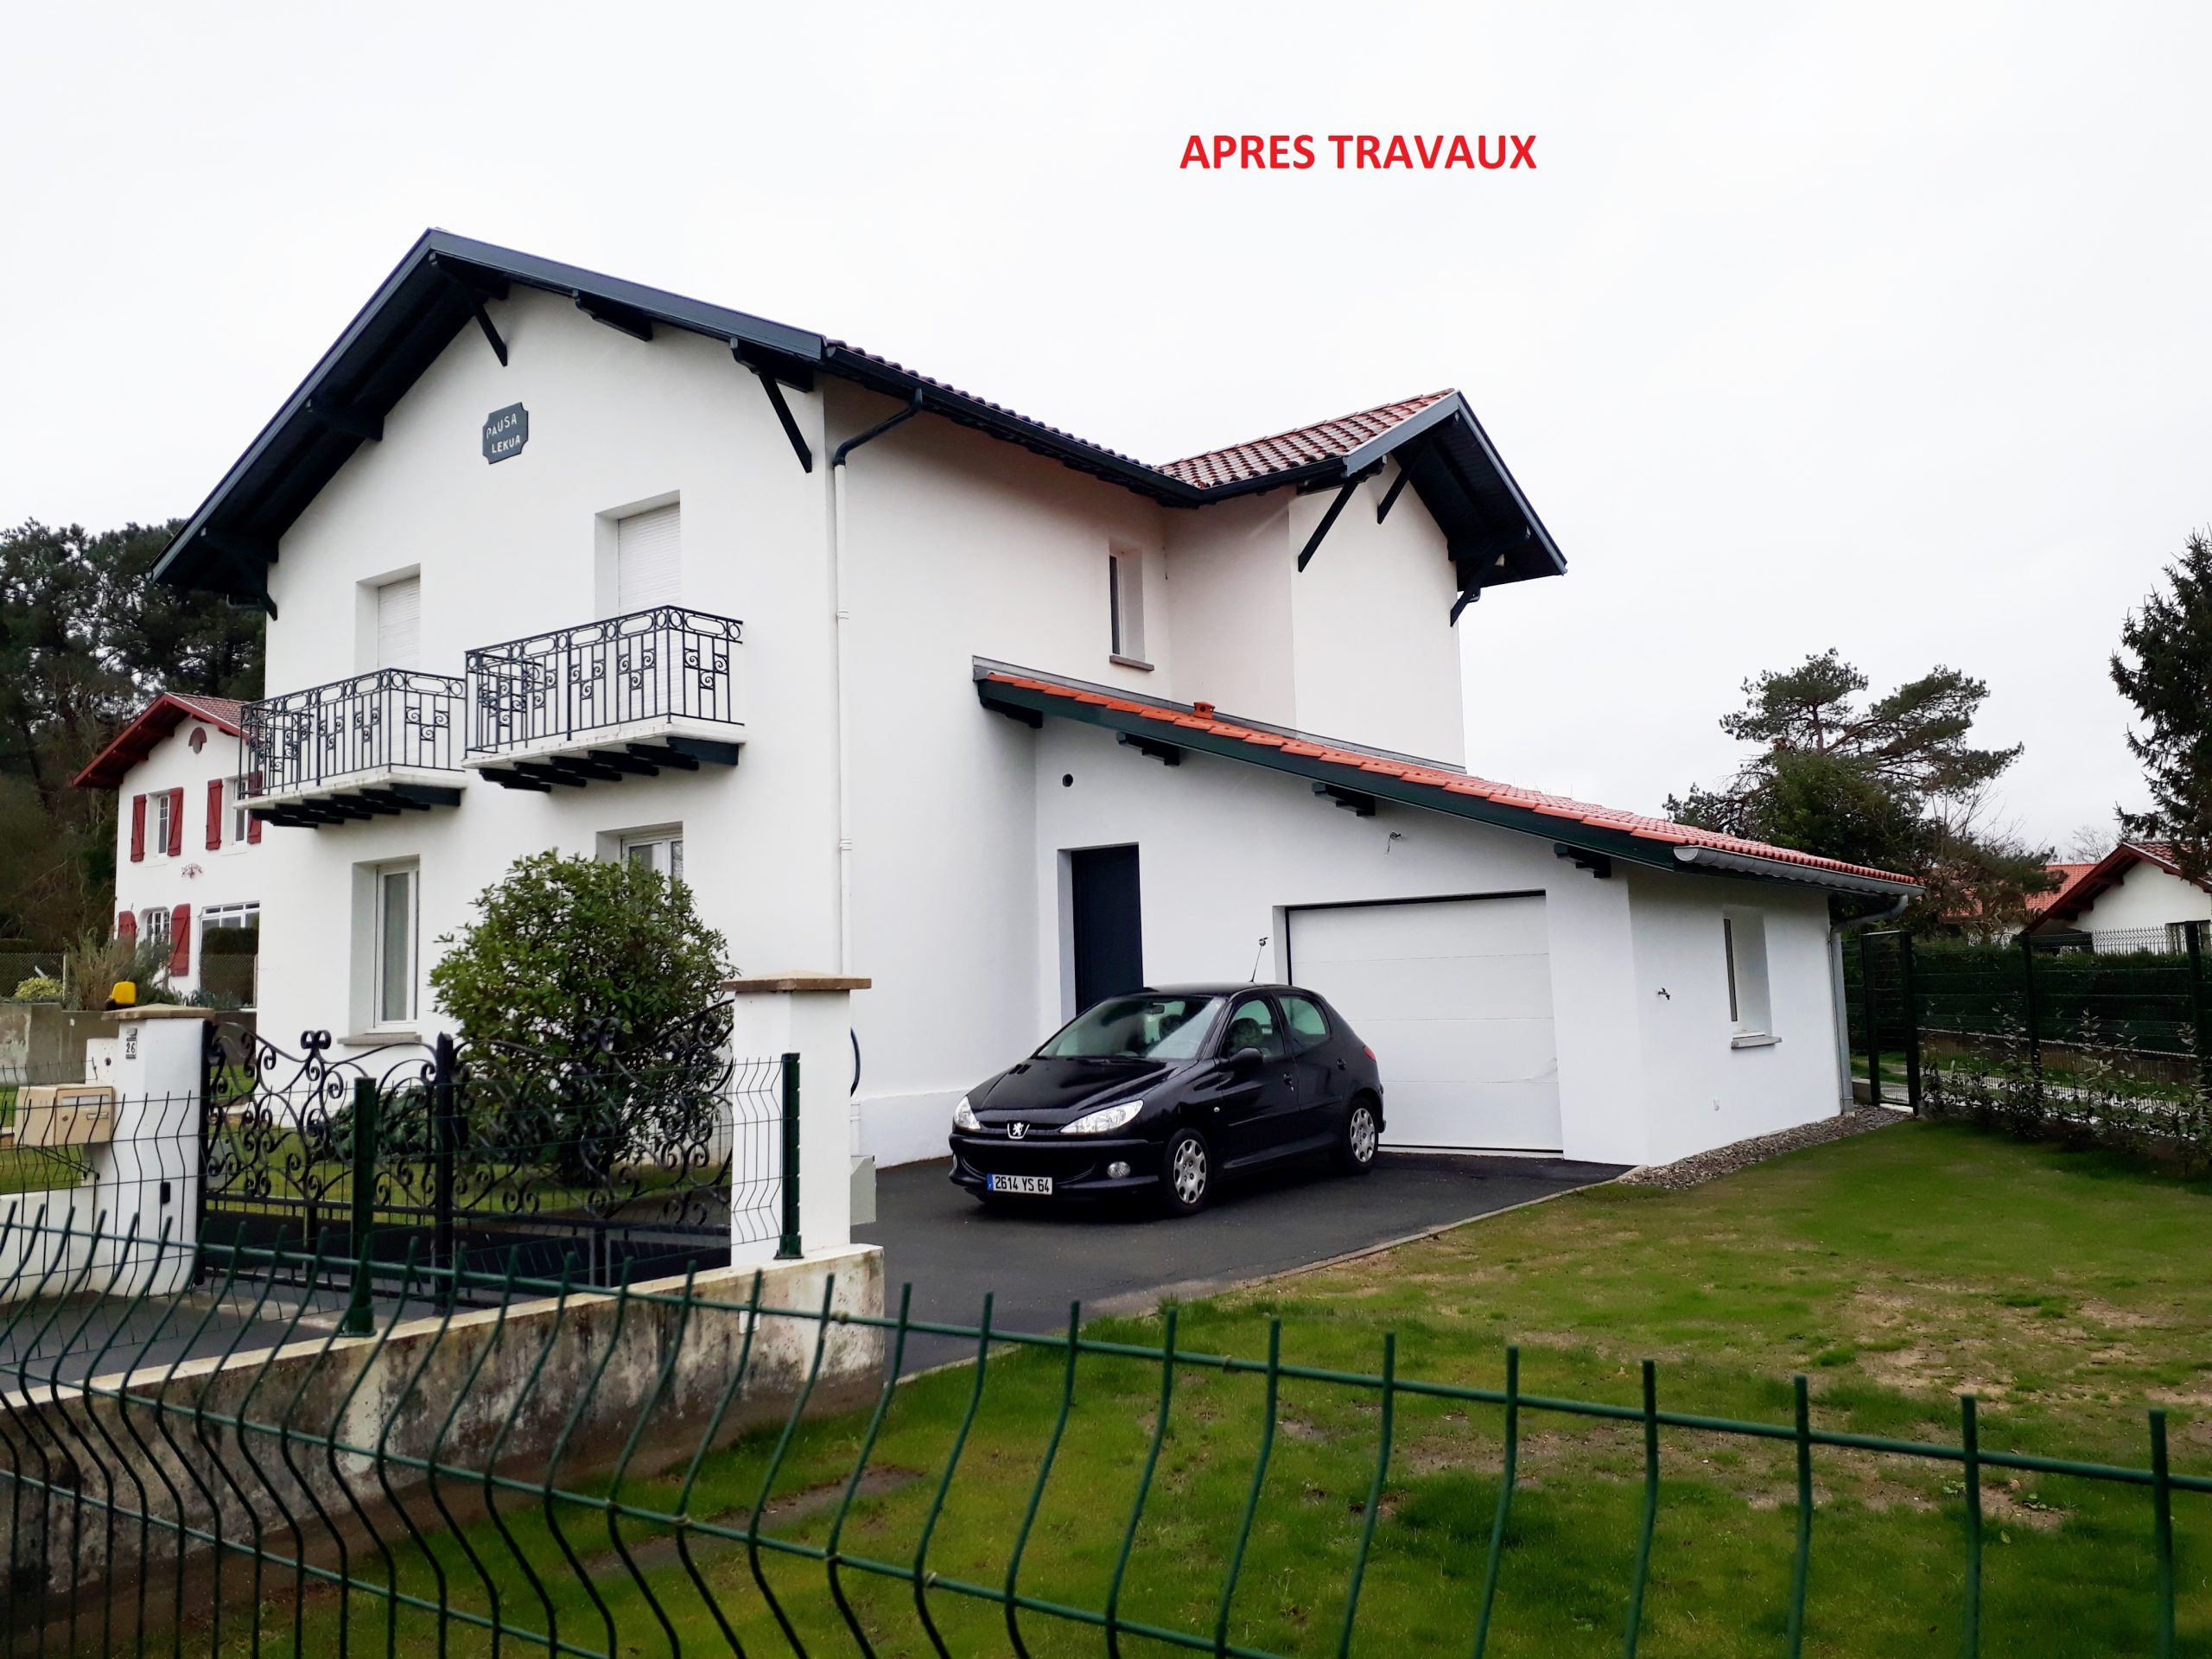 Projet d'une maison à rénover au pays basque